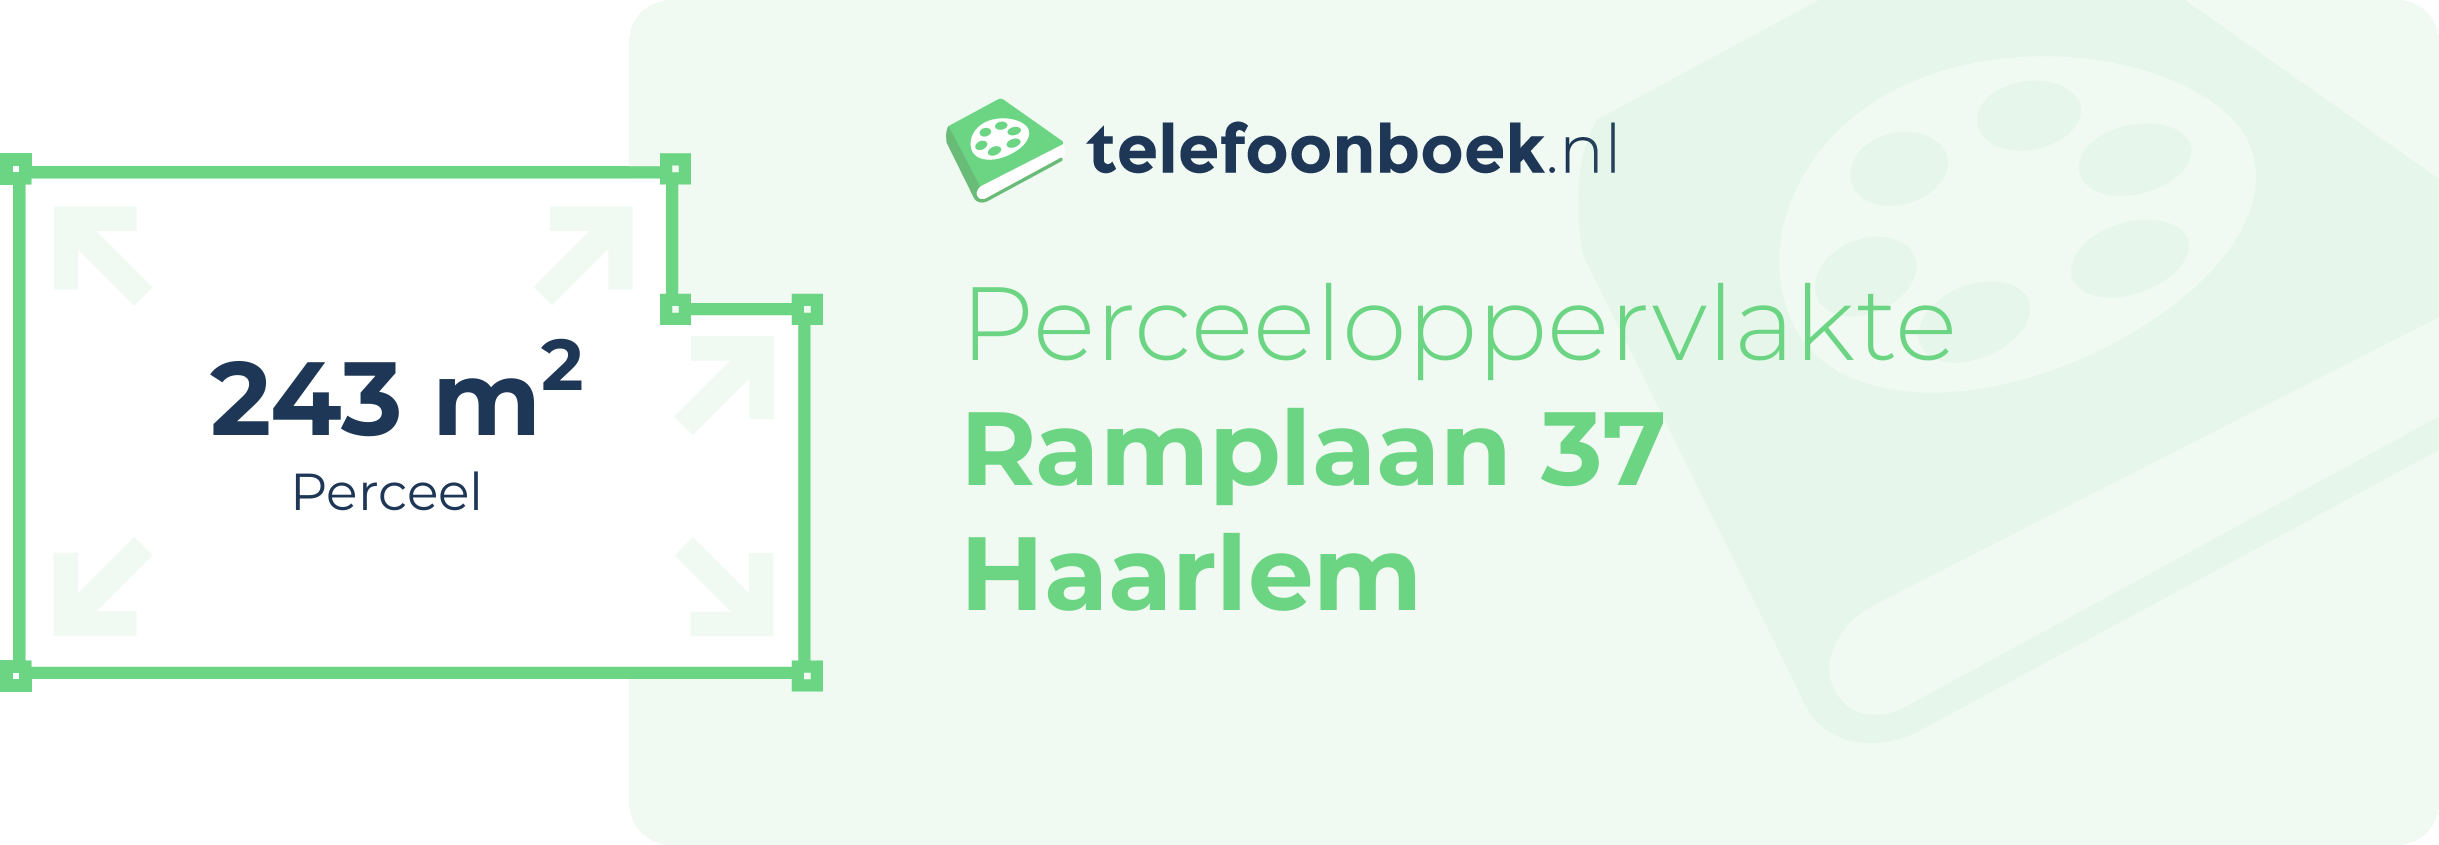 Perceeloppervlakte Ramplaan 37 Haarlem